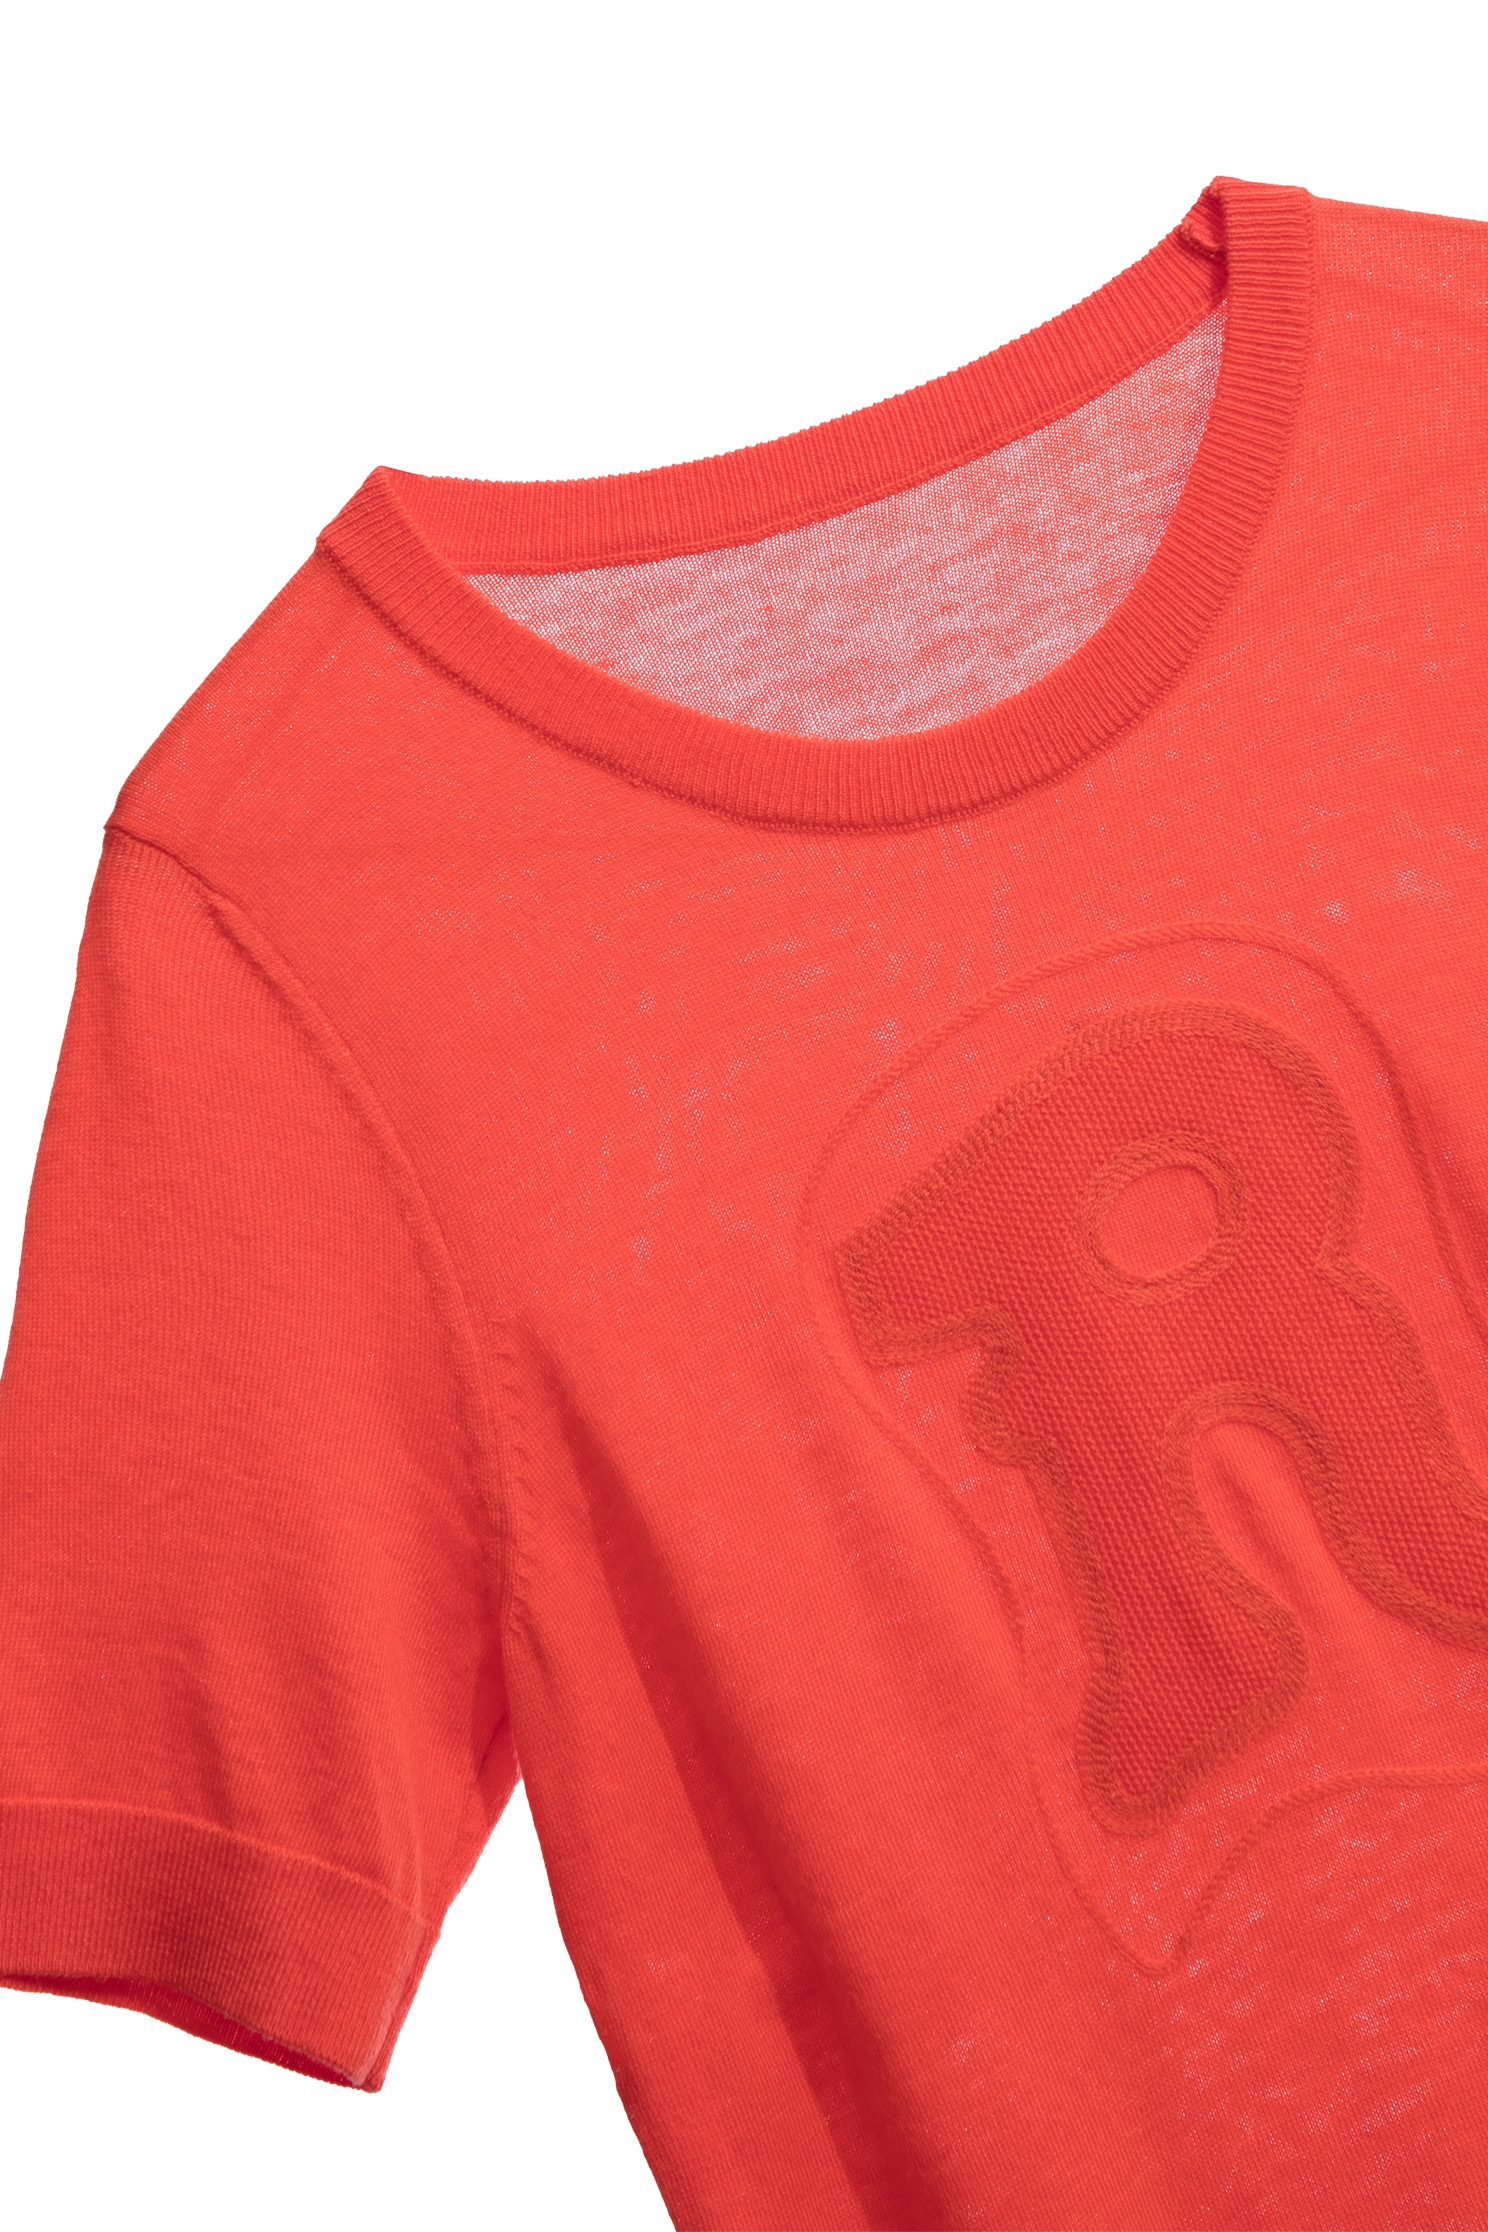 岩漿橘電繡R字針織單品岩漿橘電繡R字針織單品,新年開運特輯,派對特輯,秋冬穿搭,針織,針織衫